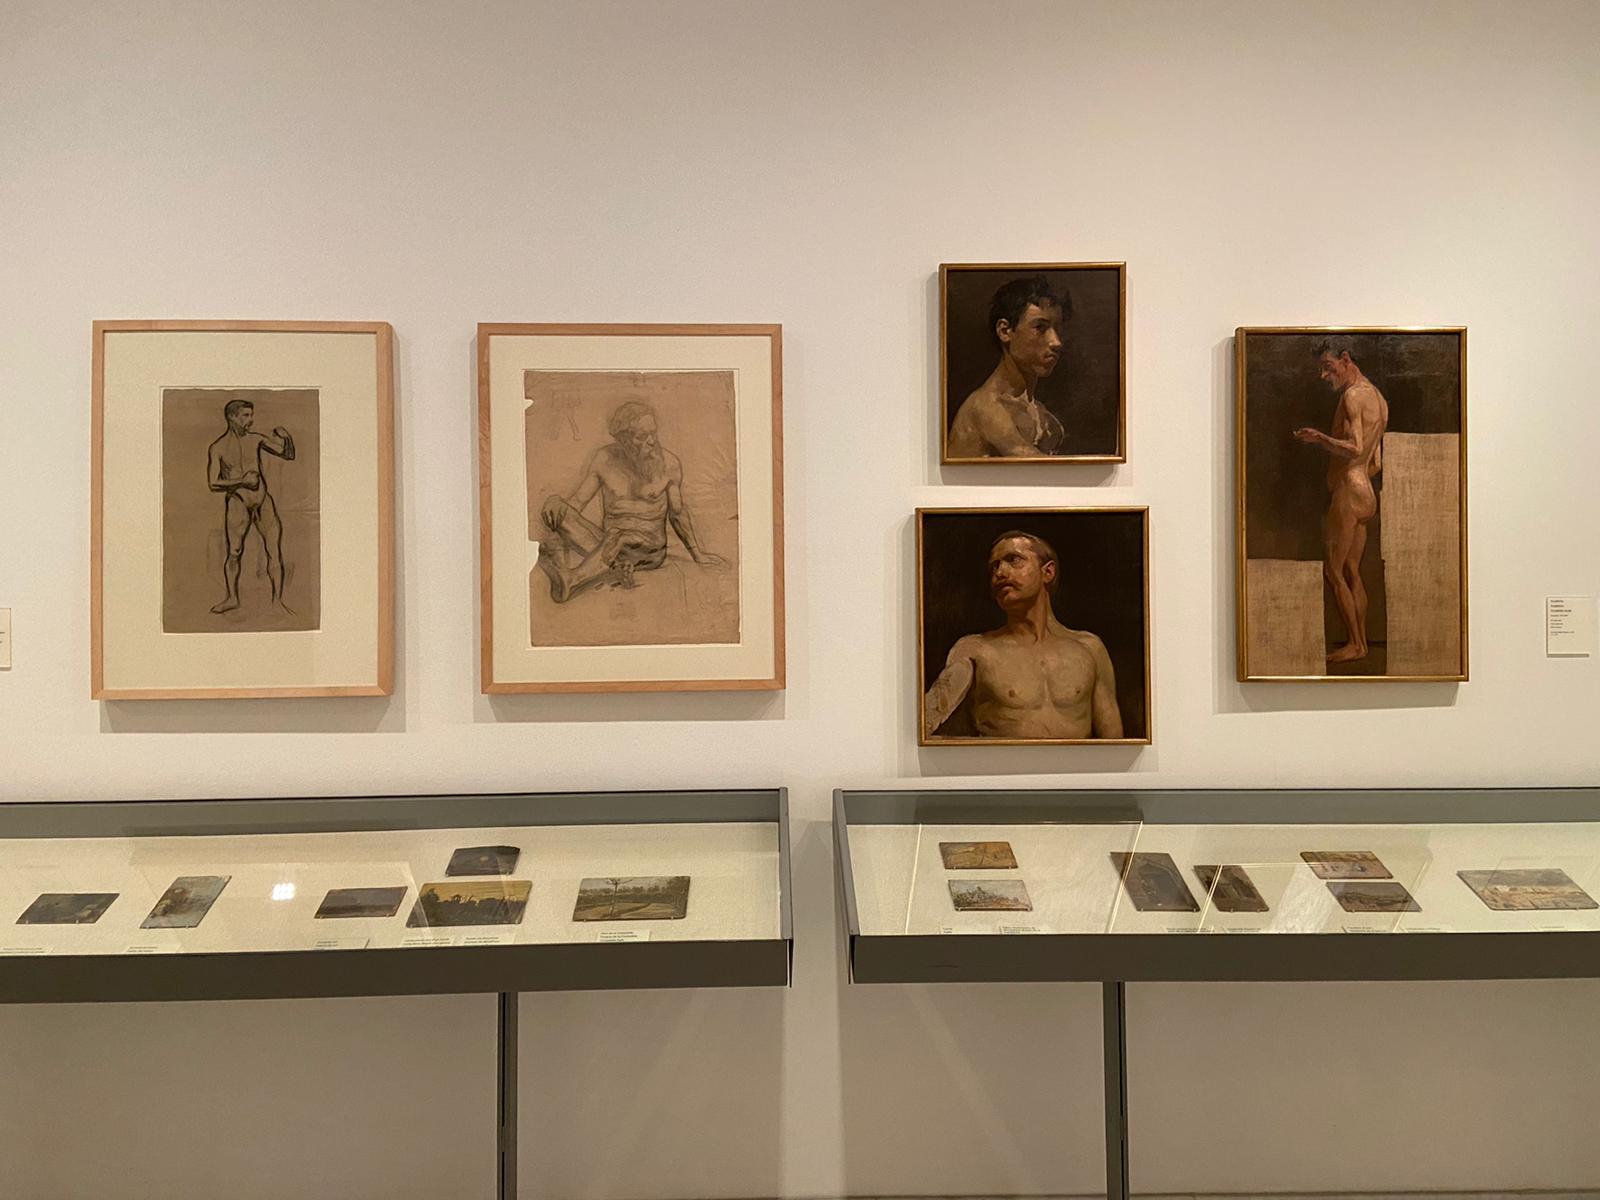 Sketches e obras do início da carreira do artista estão presentes no museu (Foto: Barbara Cassou)